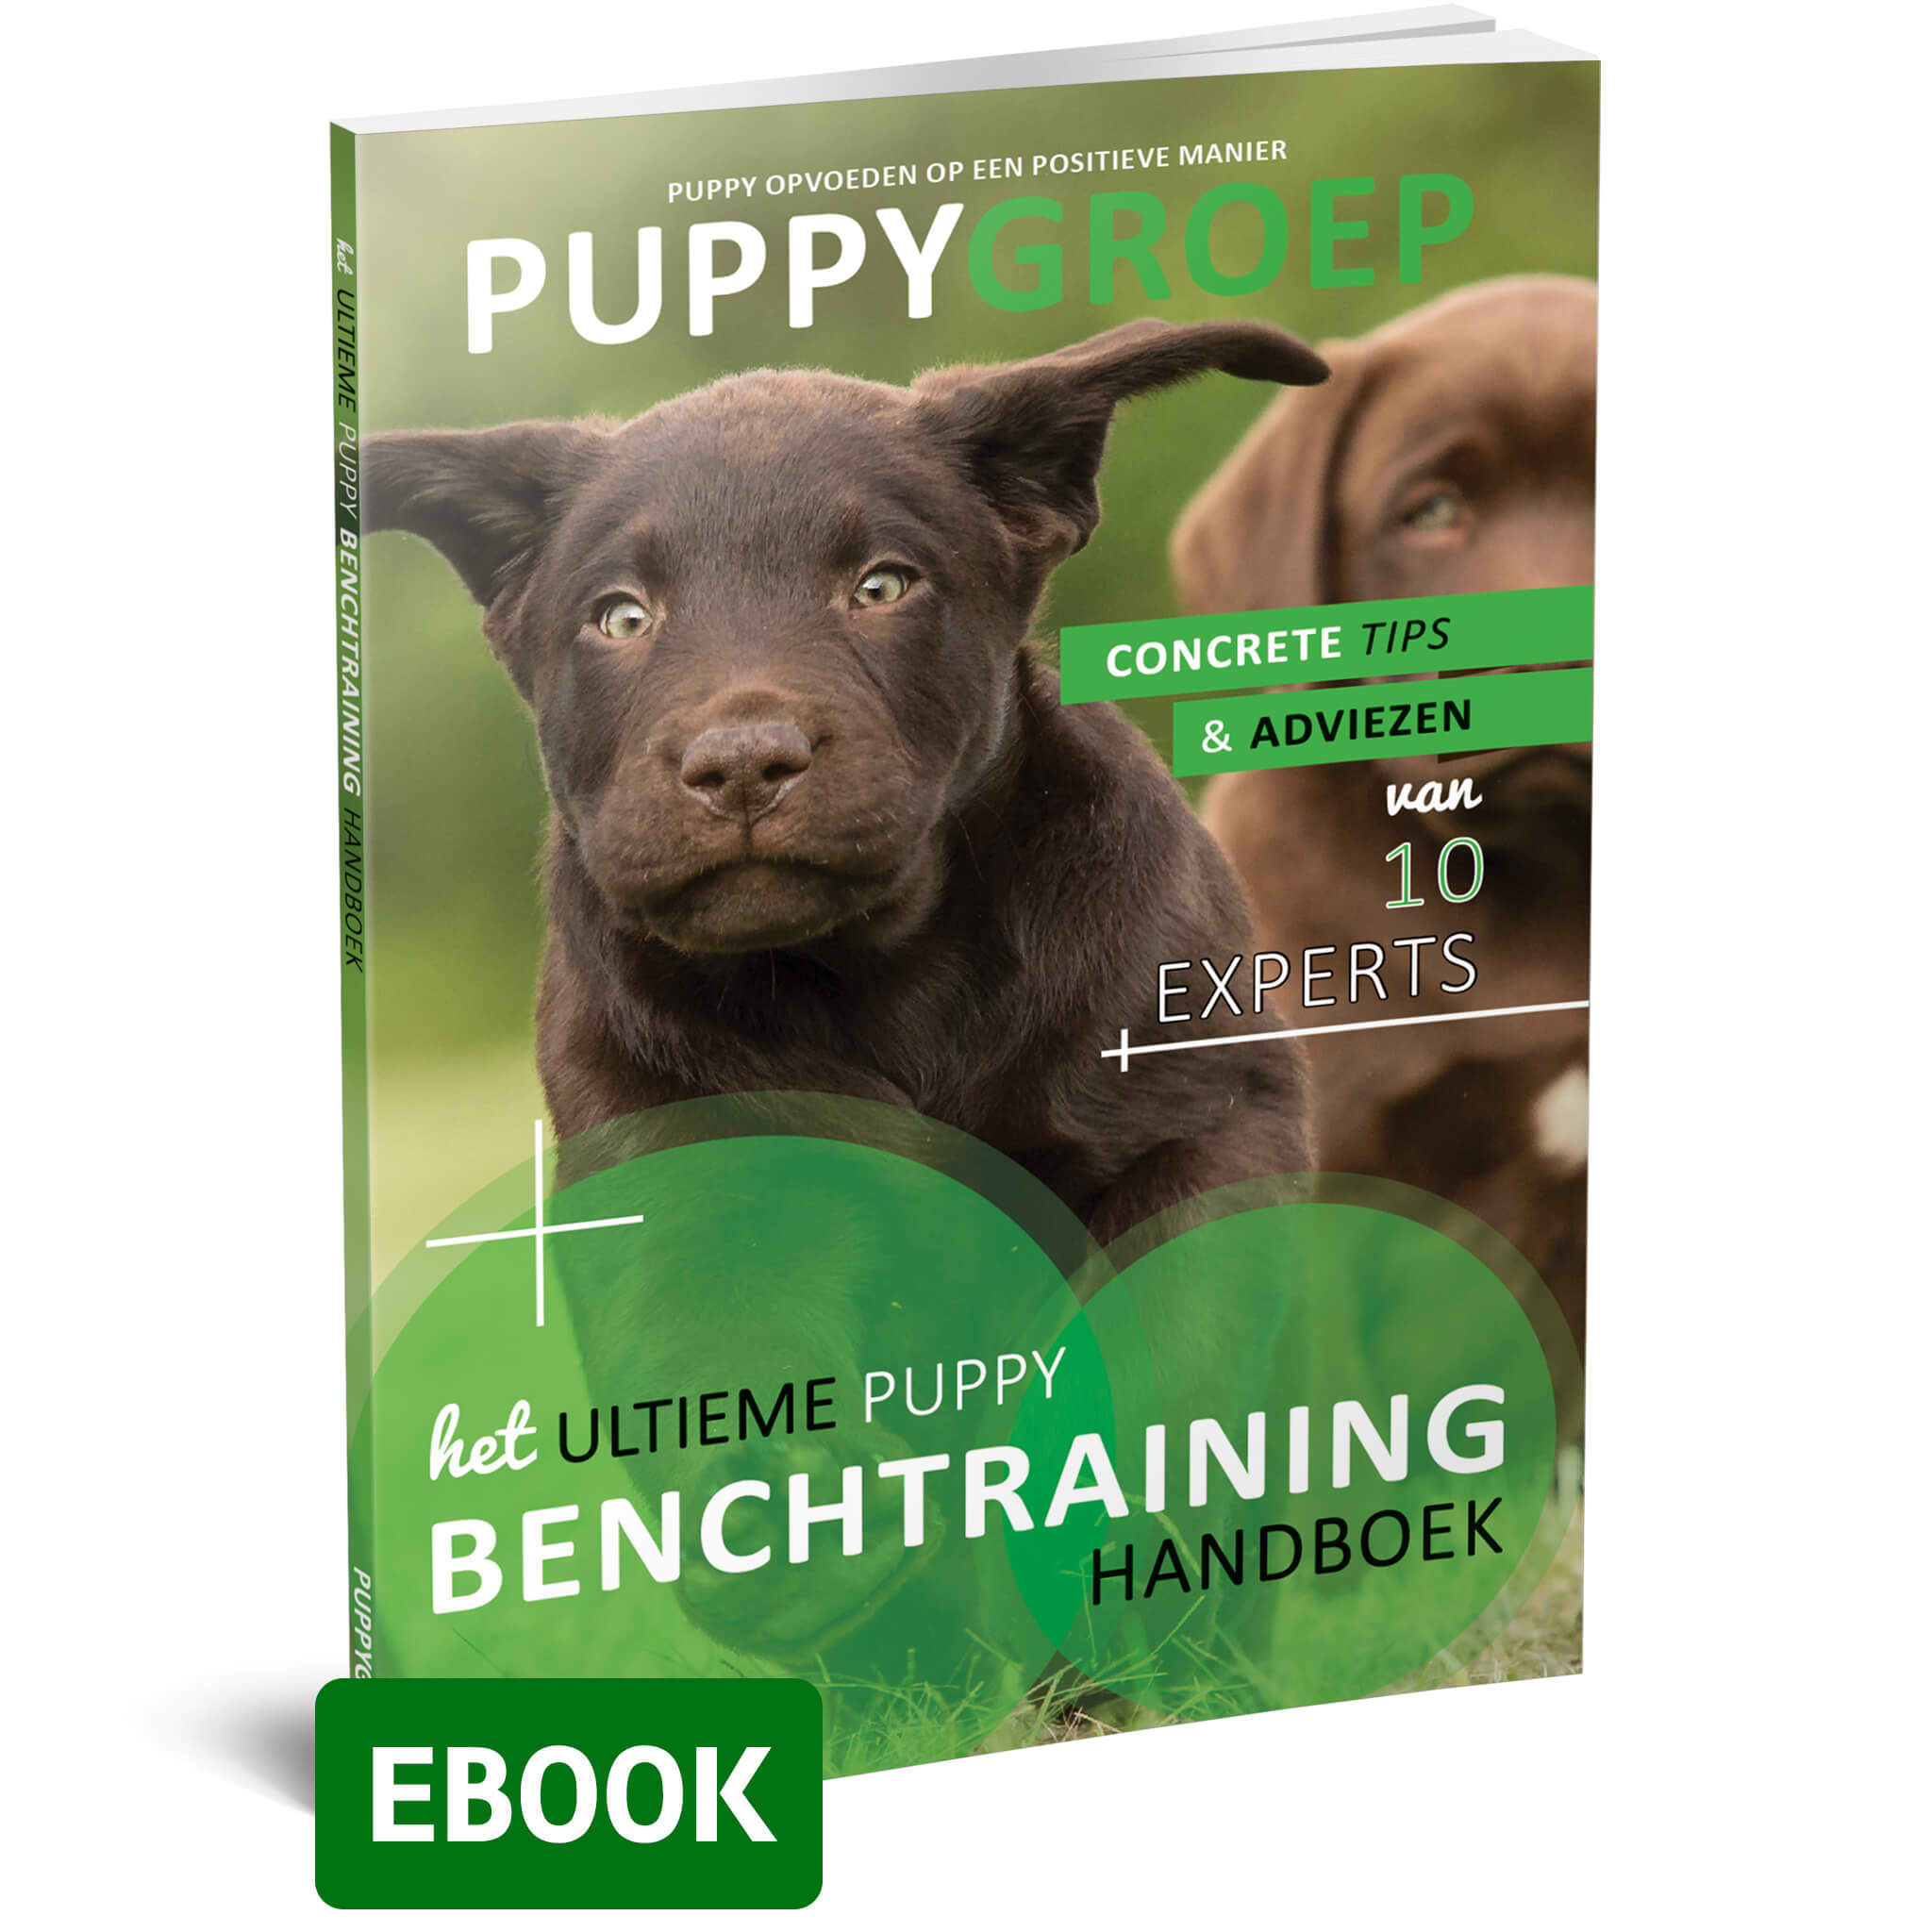 Het Ultieme Puppy Benchtraining Handboek (ebook)